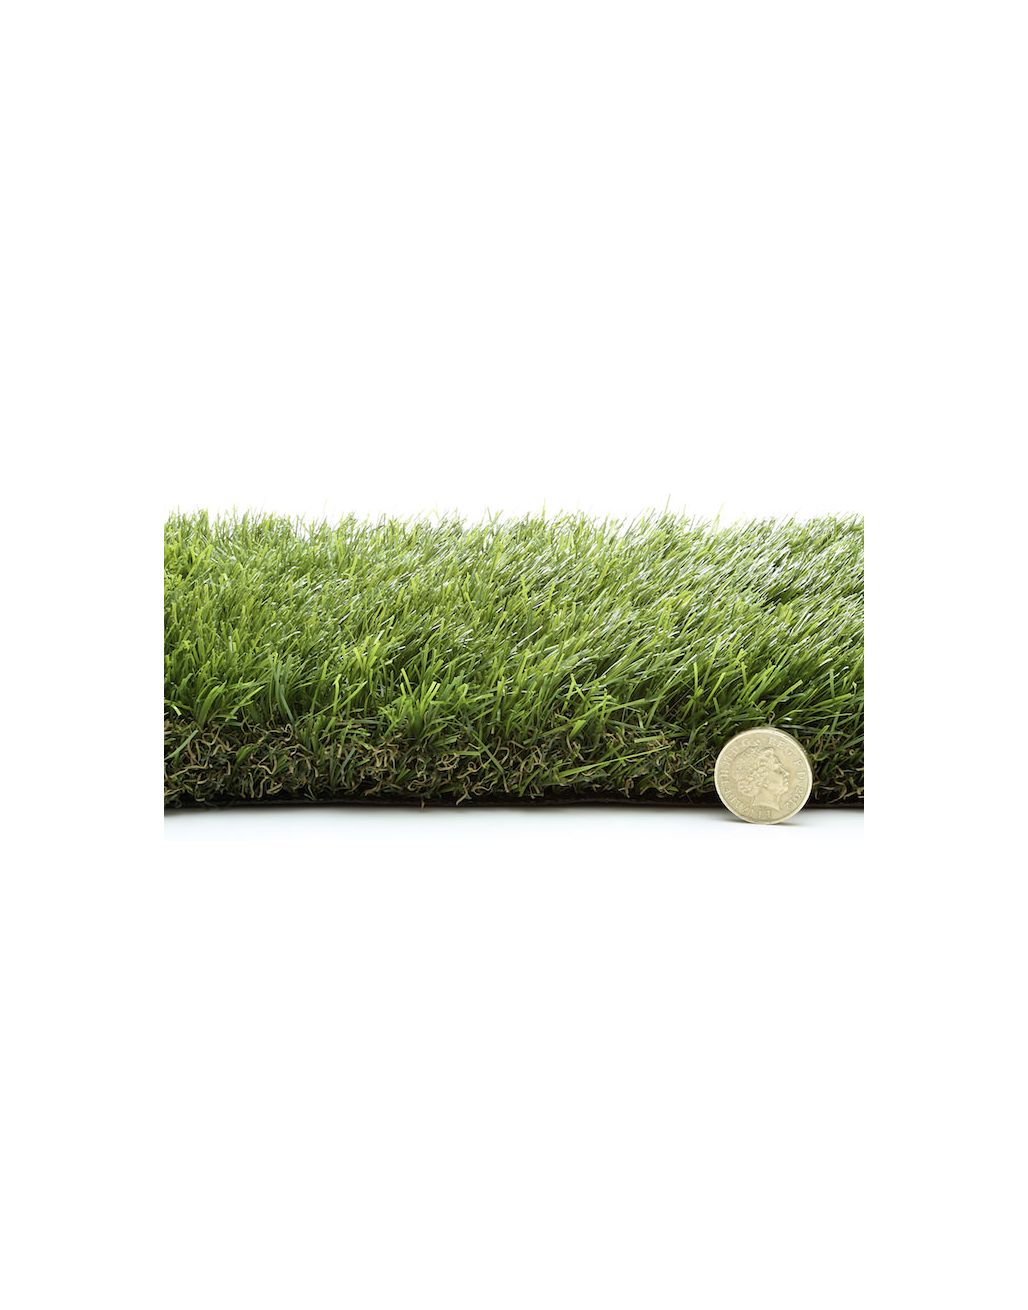 Barcelona Artificial Grass 6